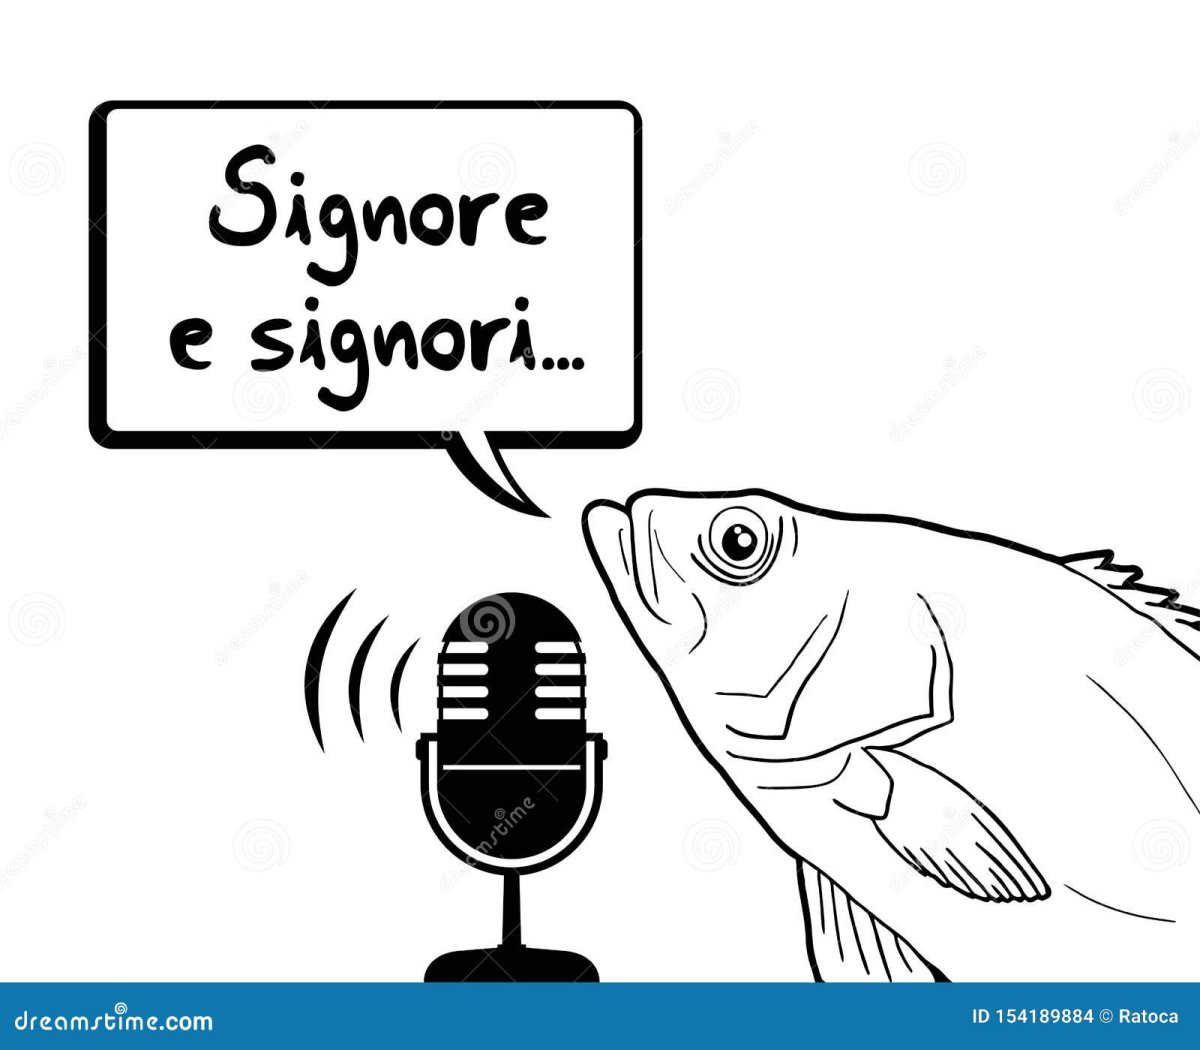 funny-fish-ladies-gentlemen-message-italian-154189884.jpg